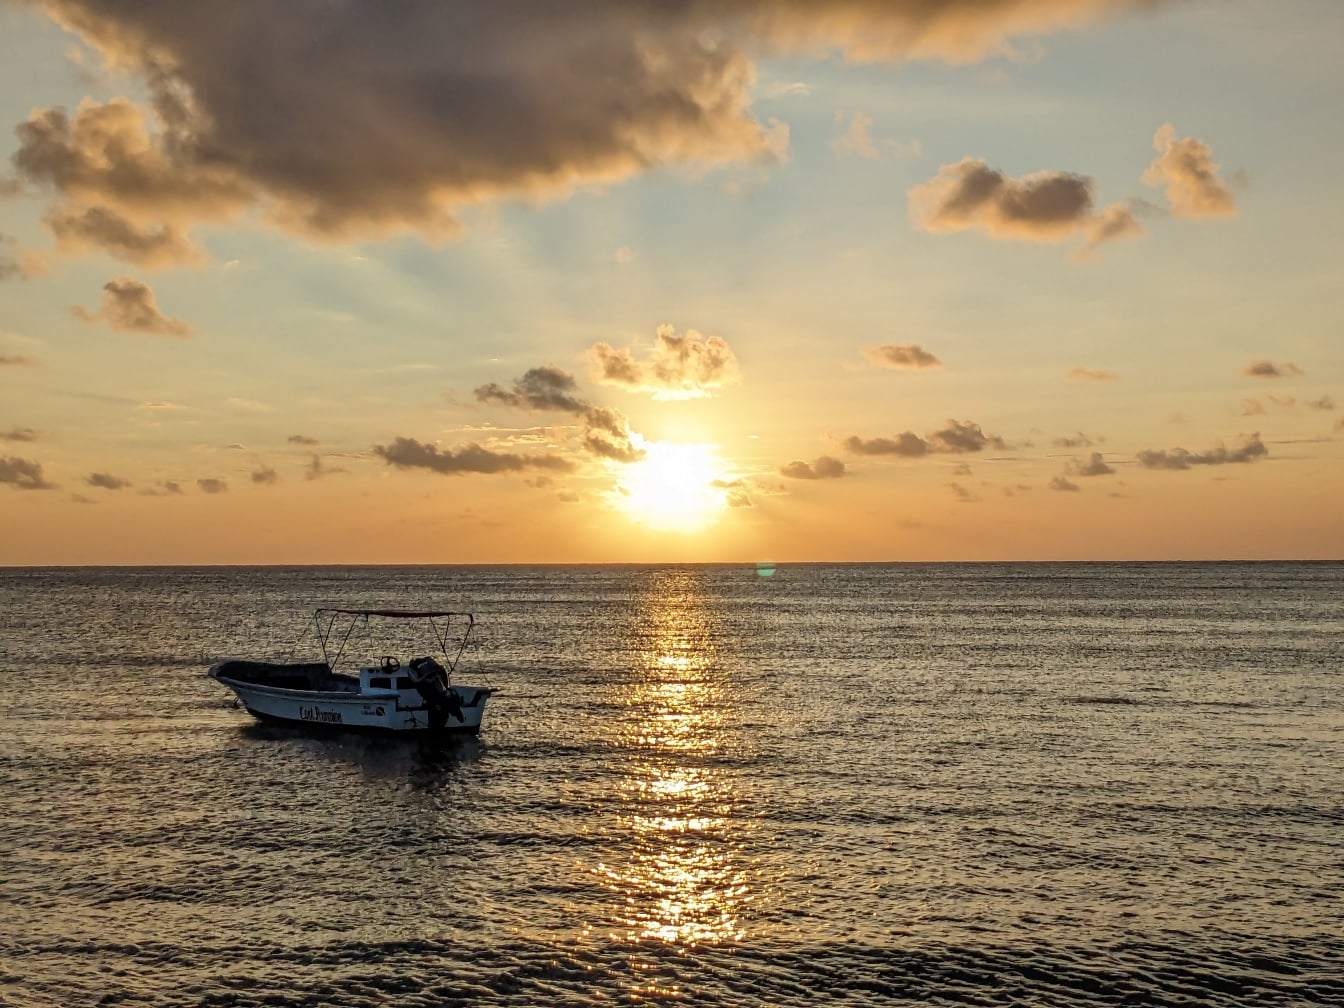 Маленькая лодка в море с яркими солнечными лучами, отражающимися на морском горизонте на восходе солнца